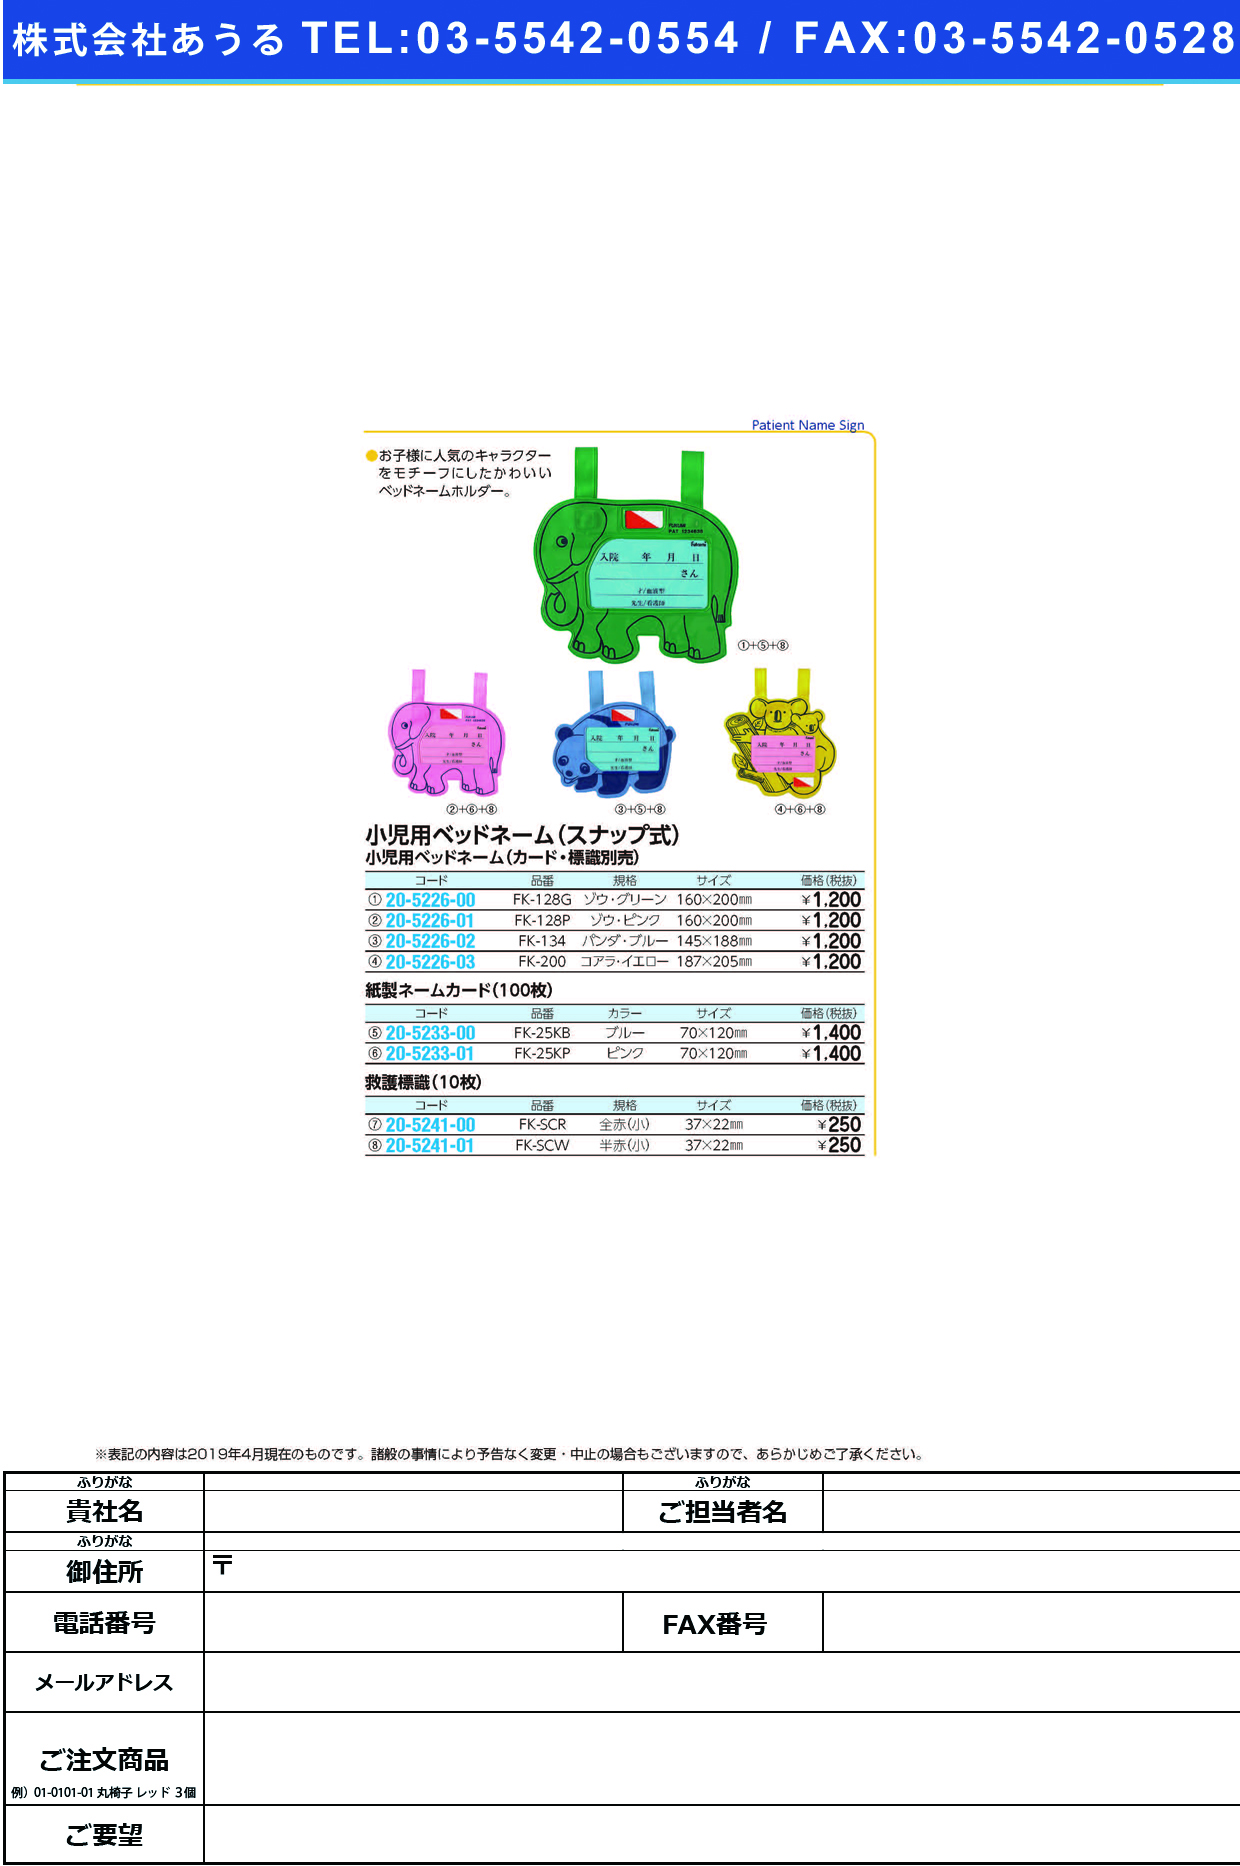 (20-5226-02)ベッドネームホルダー（小児用） FK-134(ｽﾅｯﾌﾟｼｷ) ﾍﾞｯﾄﾞﾈｰﾑﾎﾙﾀﾞｰ【1枚単位】【2019年カタログ商品】